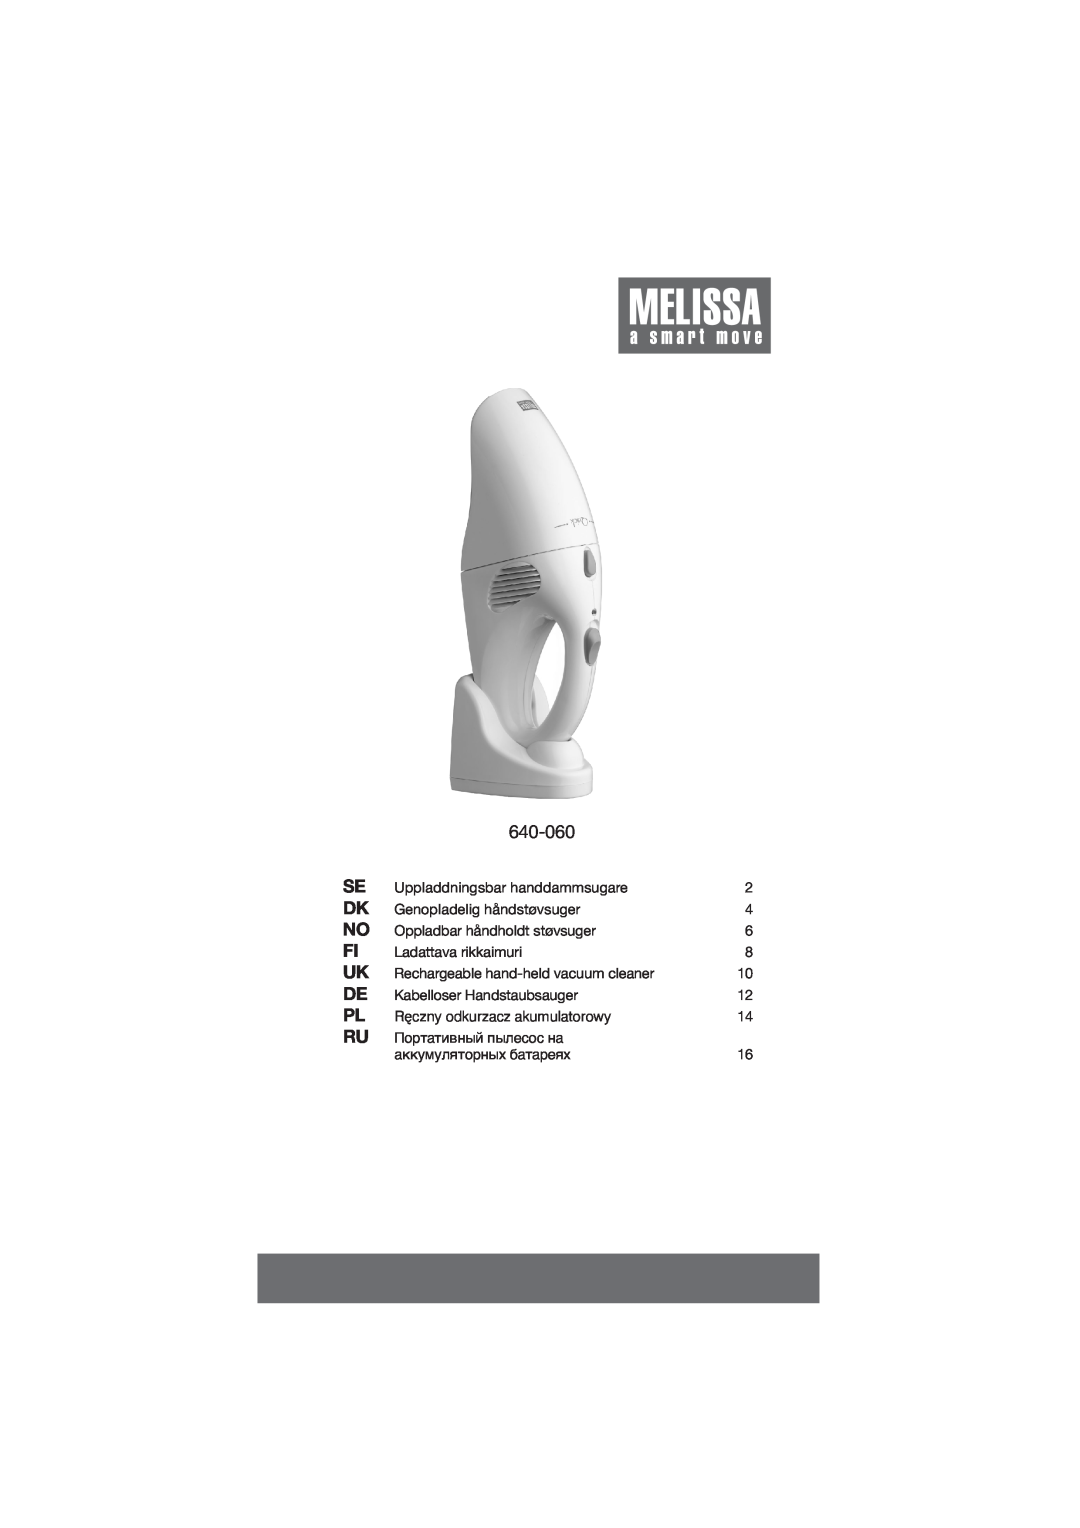 Melissa 640-060 manual 